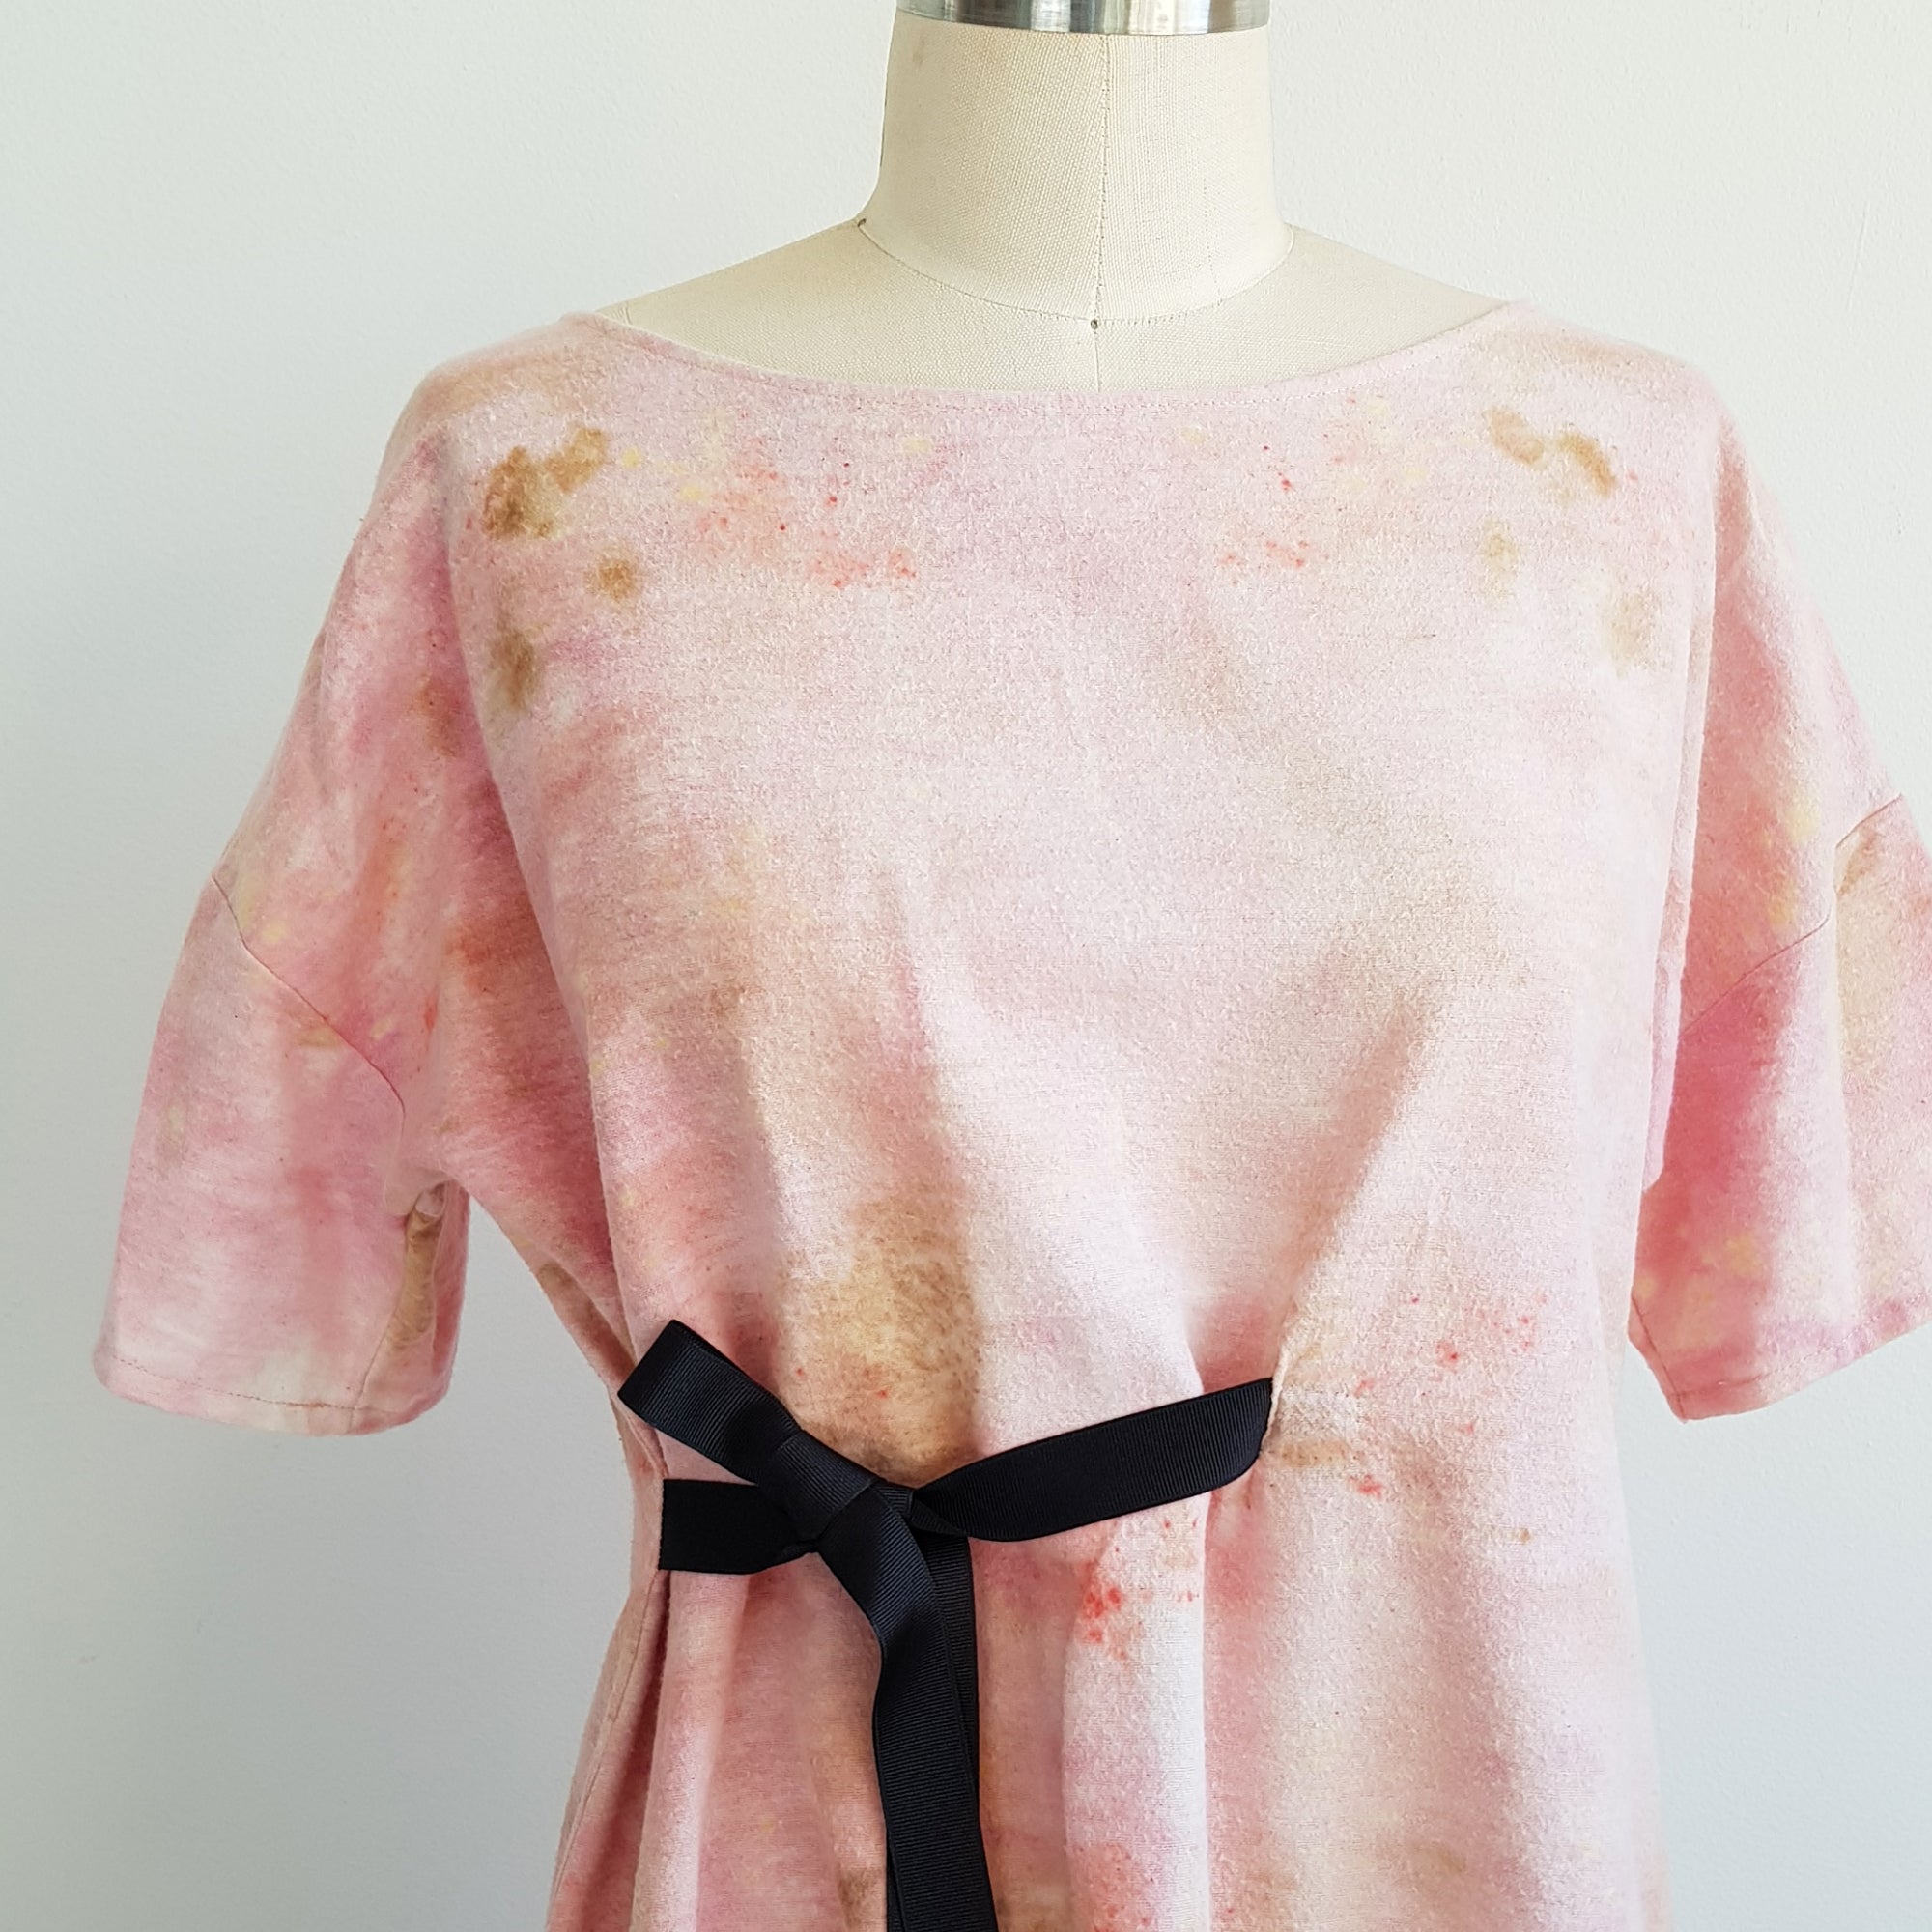 Eco Print dress botanical dye – leaf prints cotton fleece xsilk